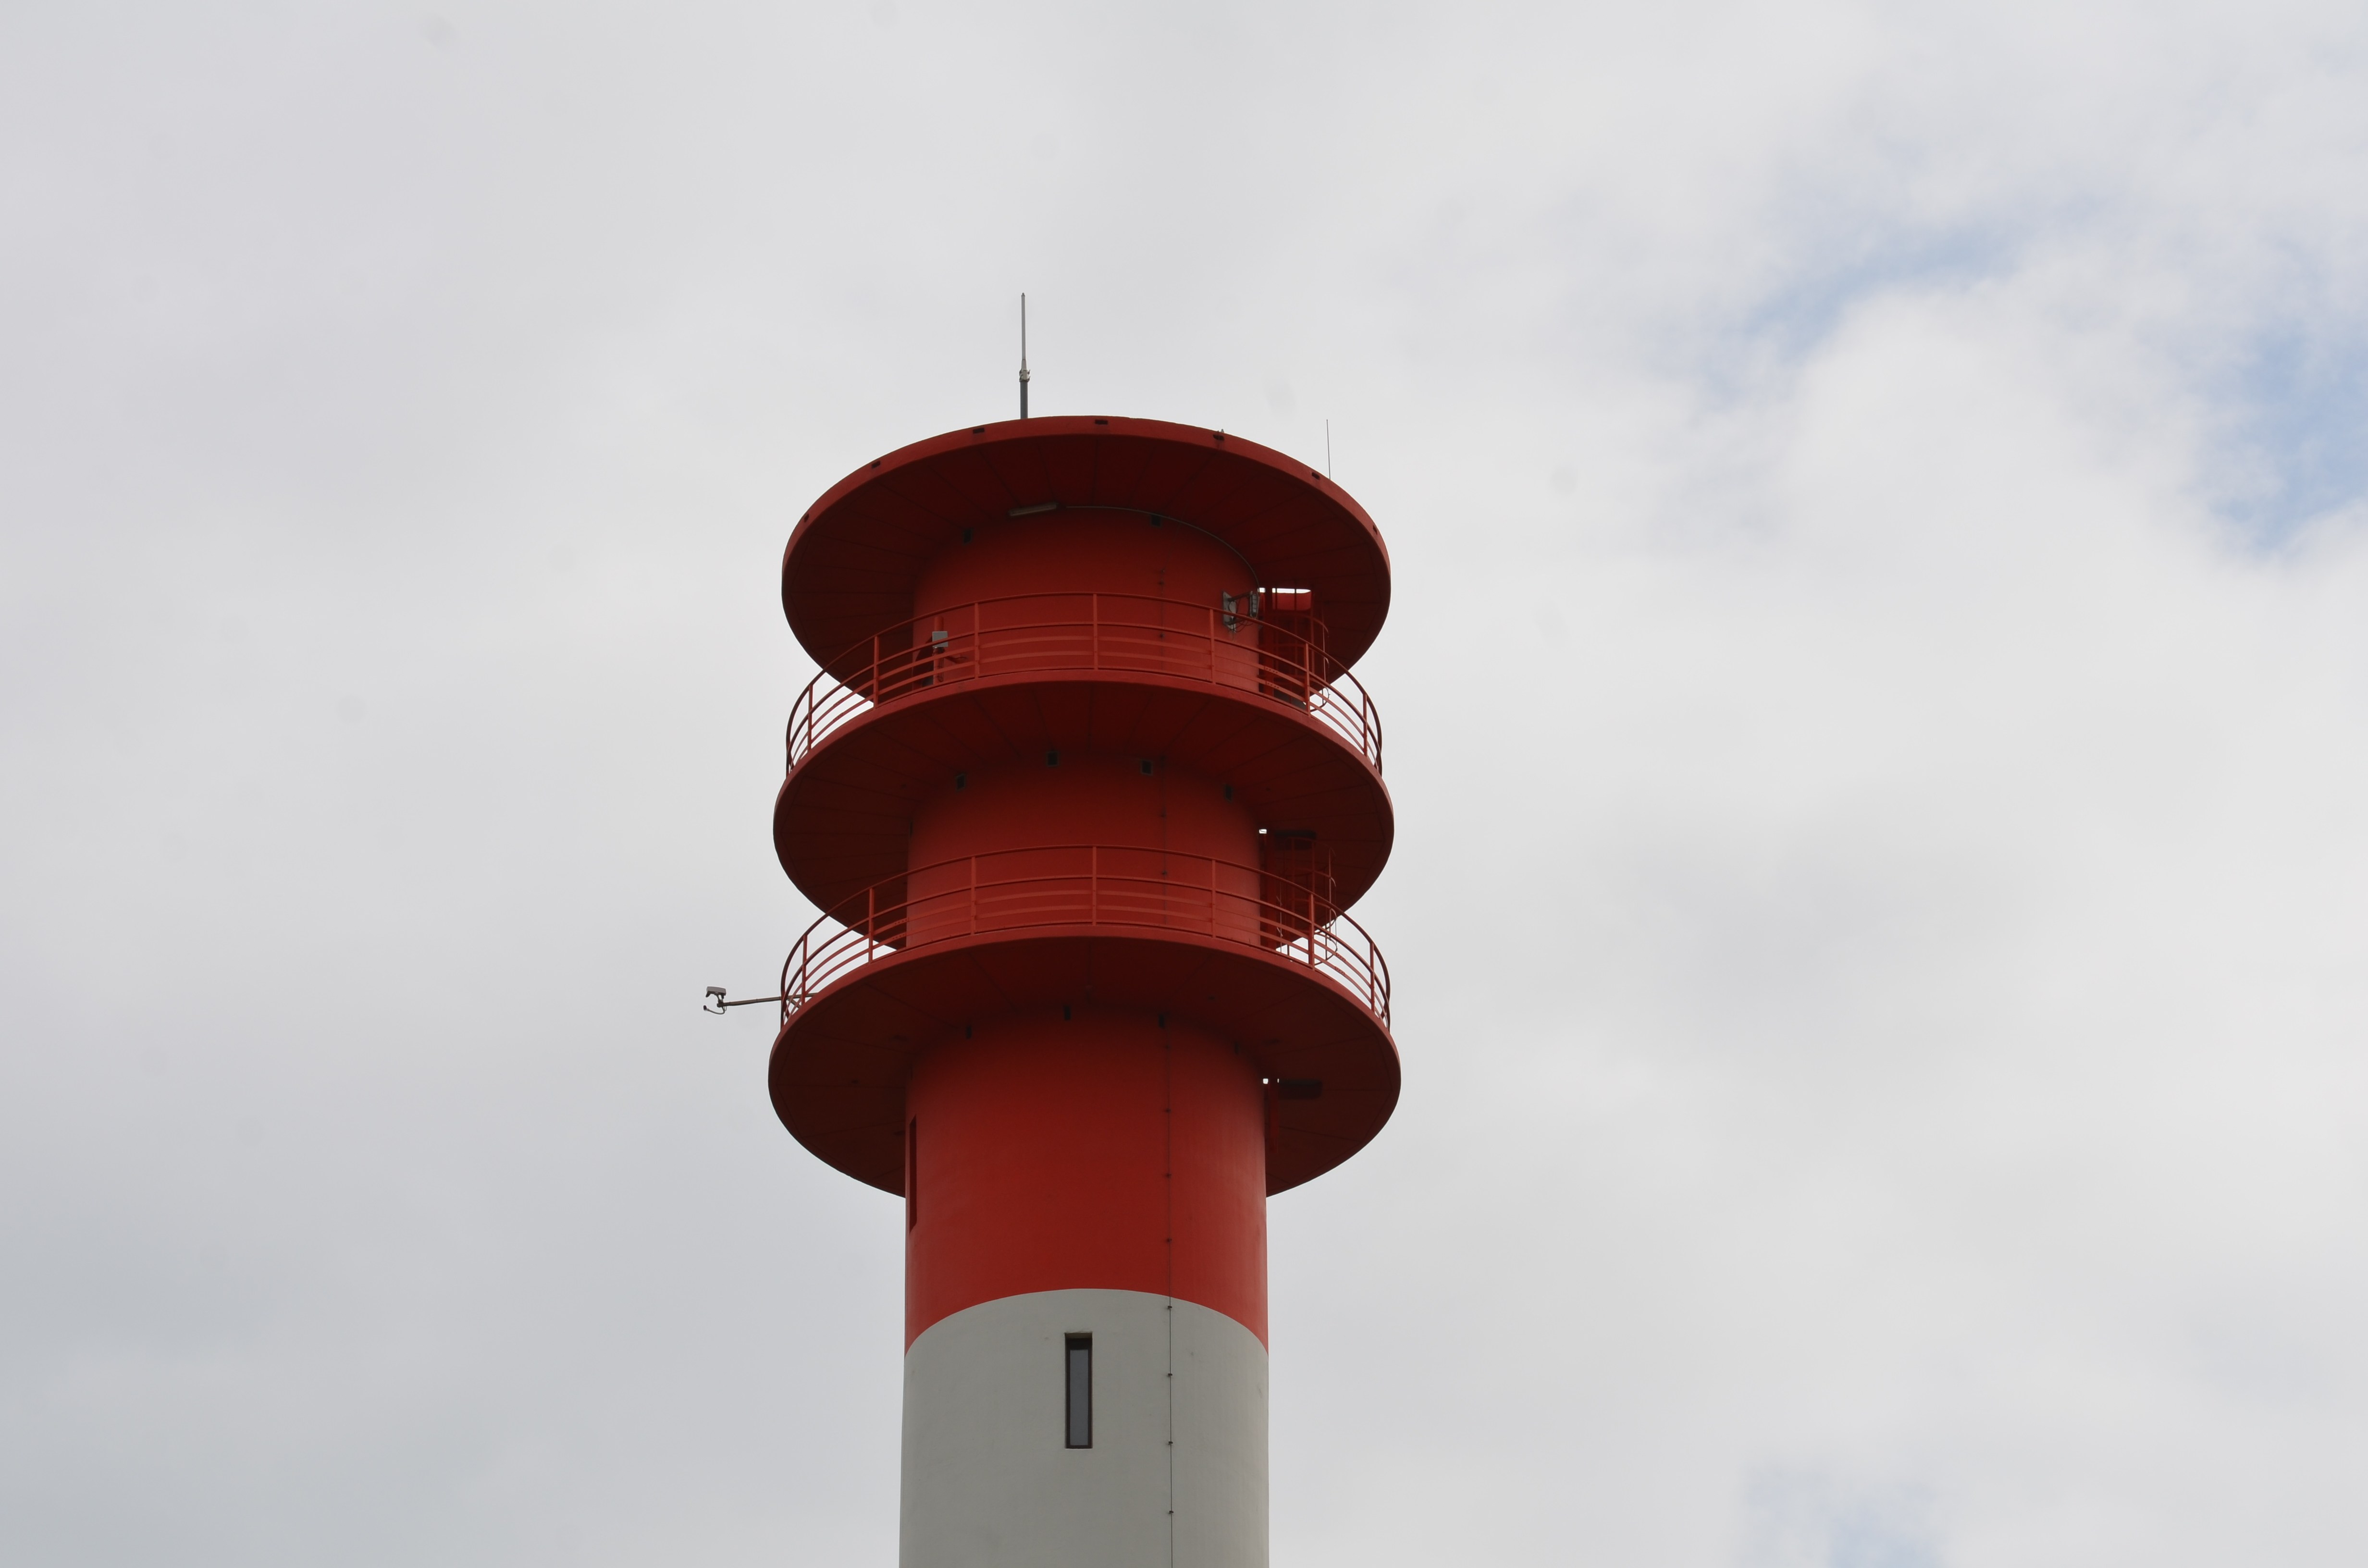 Leuchtturm - fester Bestandteil der Seefahrt / der Experte in IT Projekten